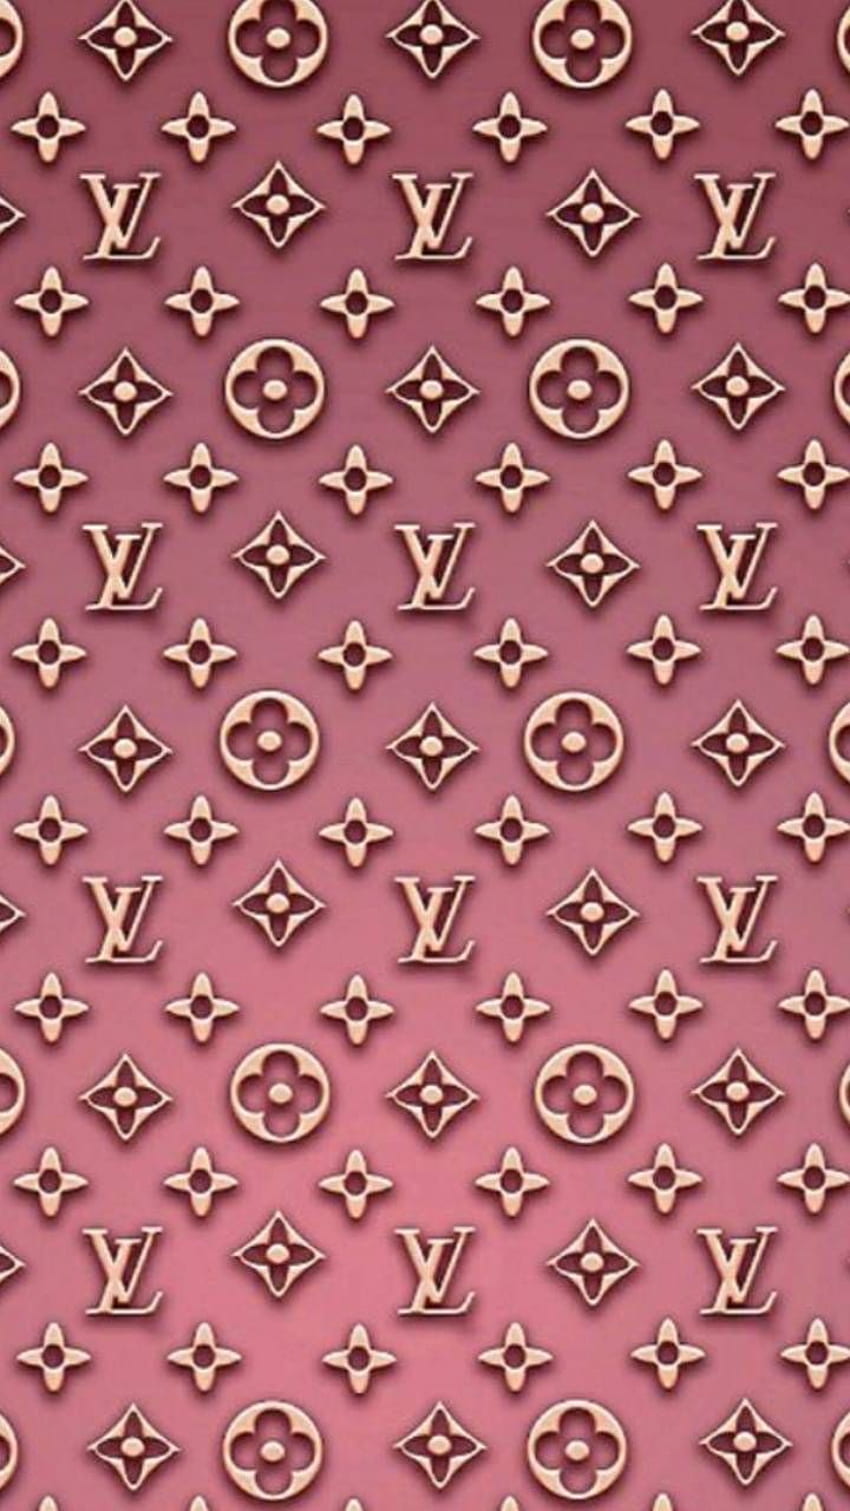 New 3D Louis Vuitton Wallpaper  Iphone wallpaper girly, Louis vuitton  iphone wallpaper, Chanel wall art